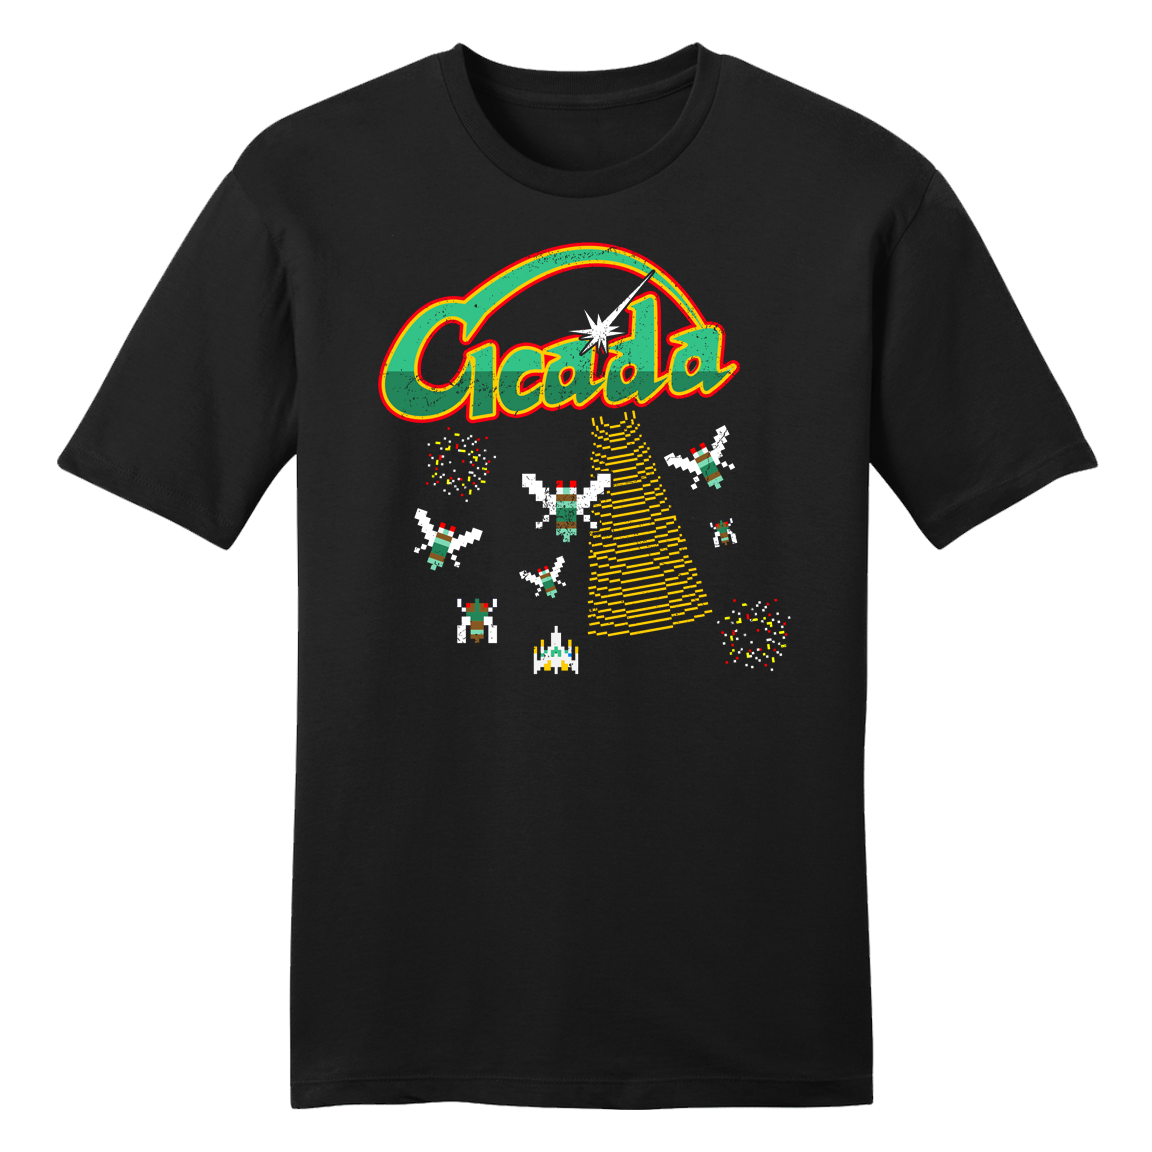 Divesart - "Cicada" The Video Game